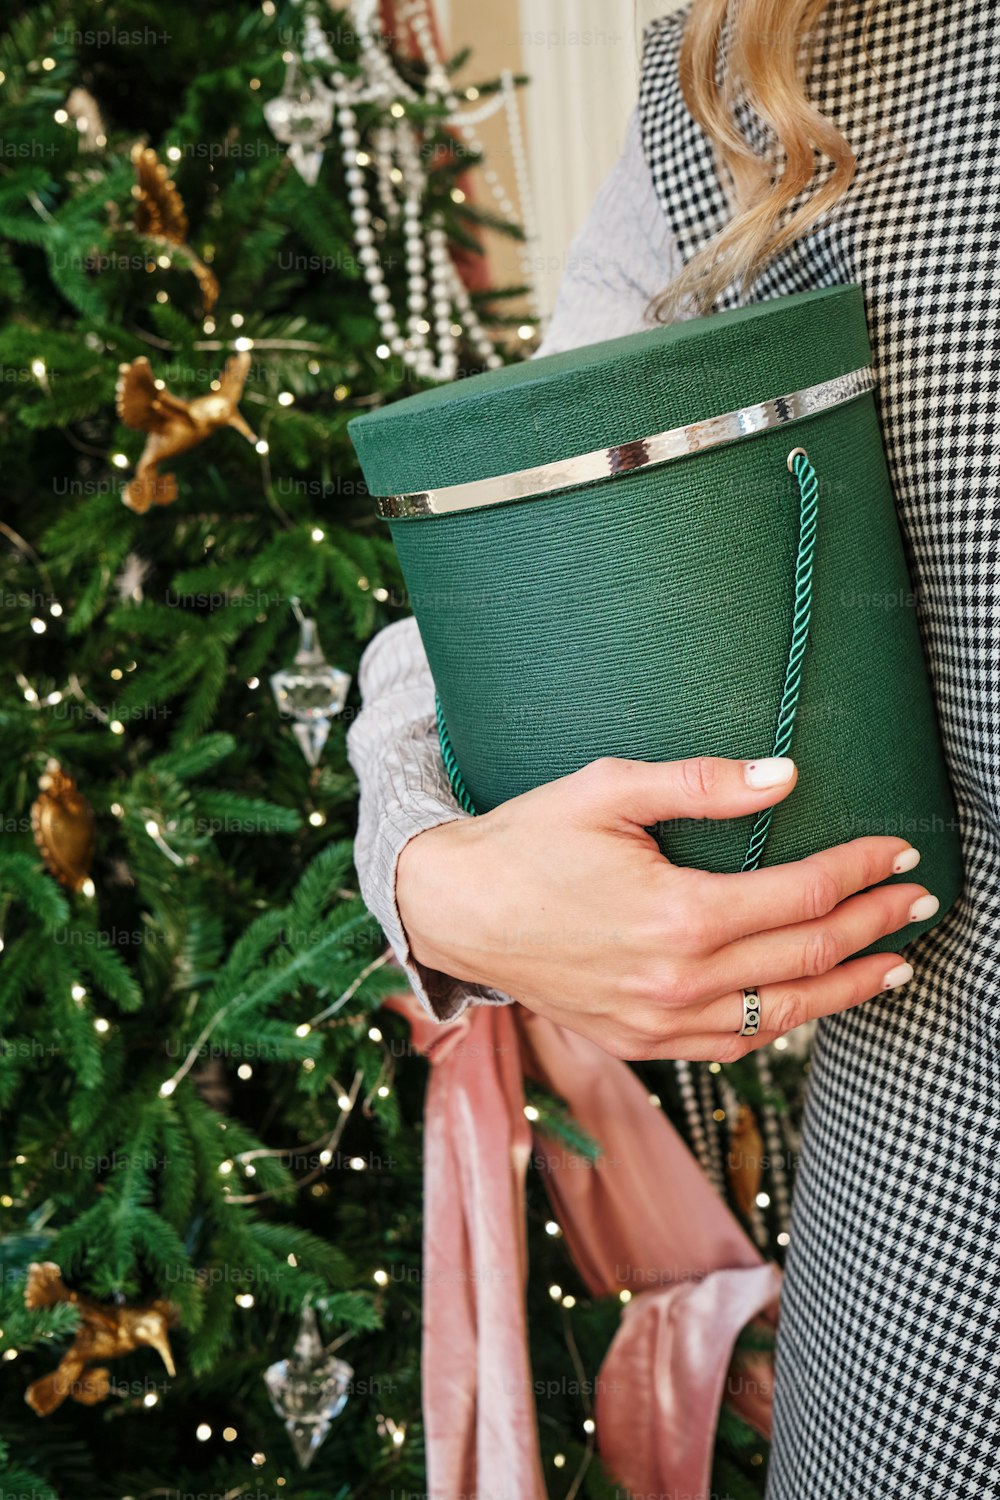 クリスマスツリーの前で緑のカップを持つ女性